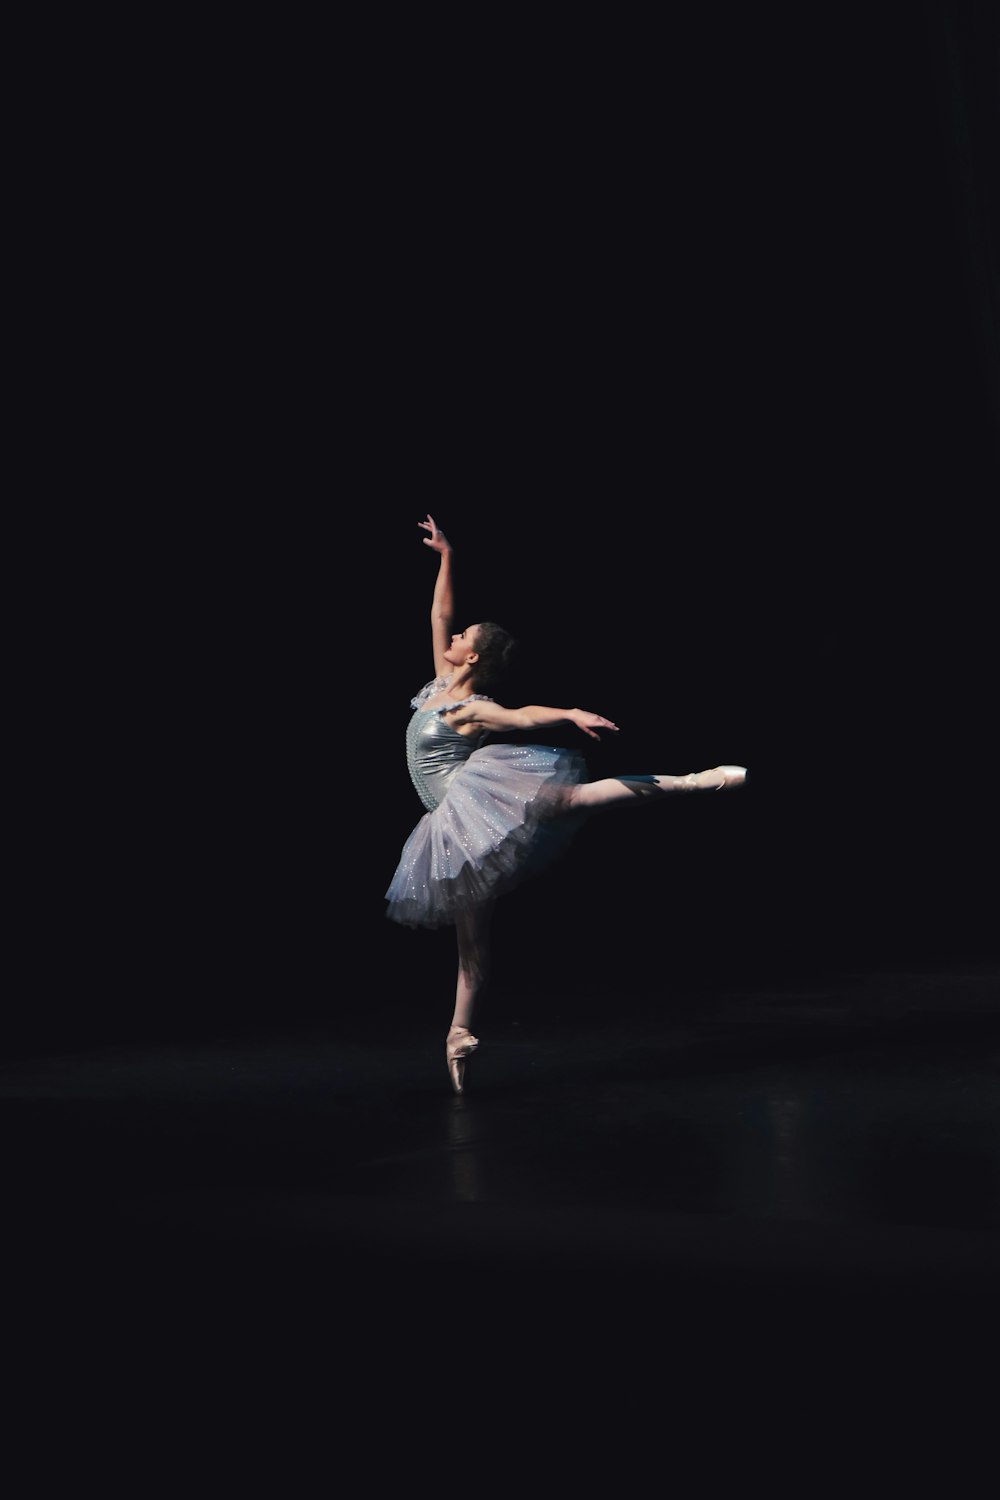 fotografia de bailarina dançante